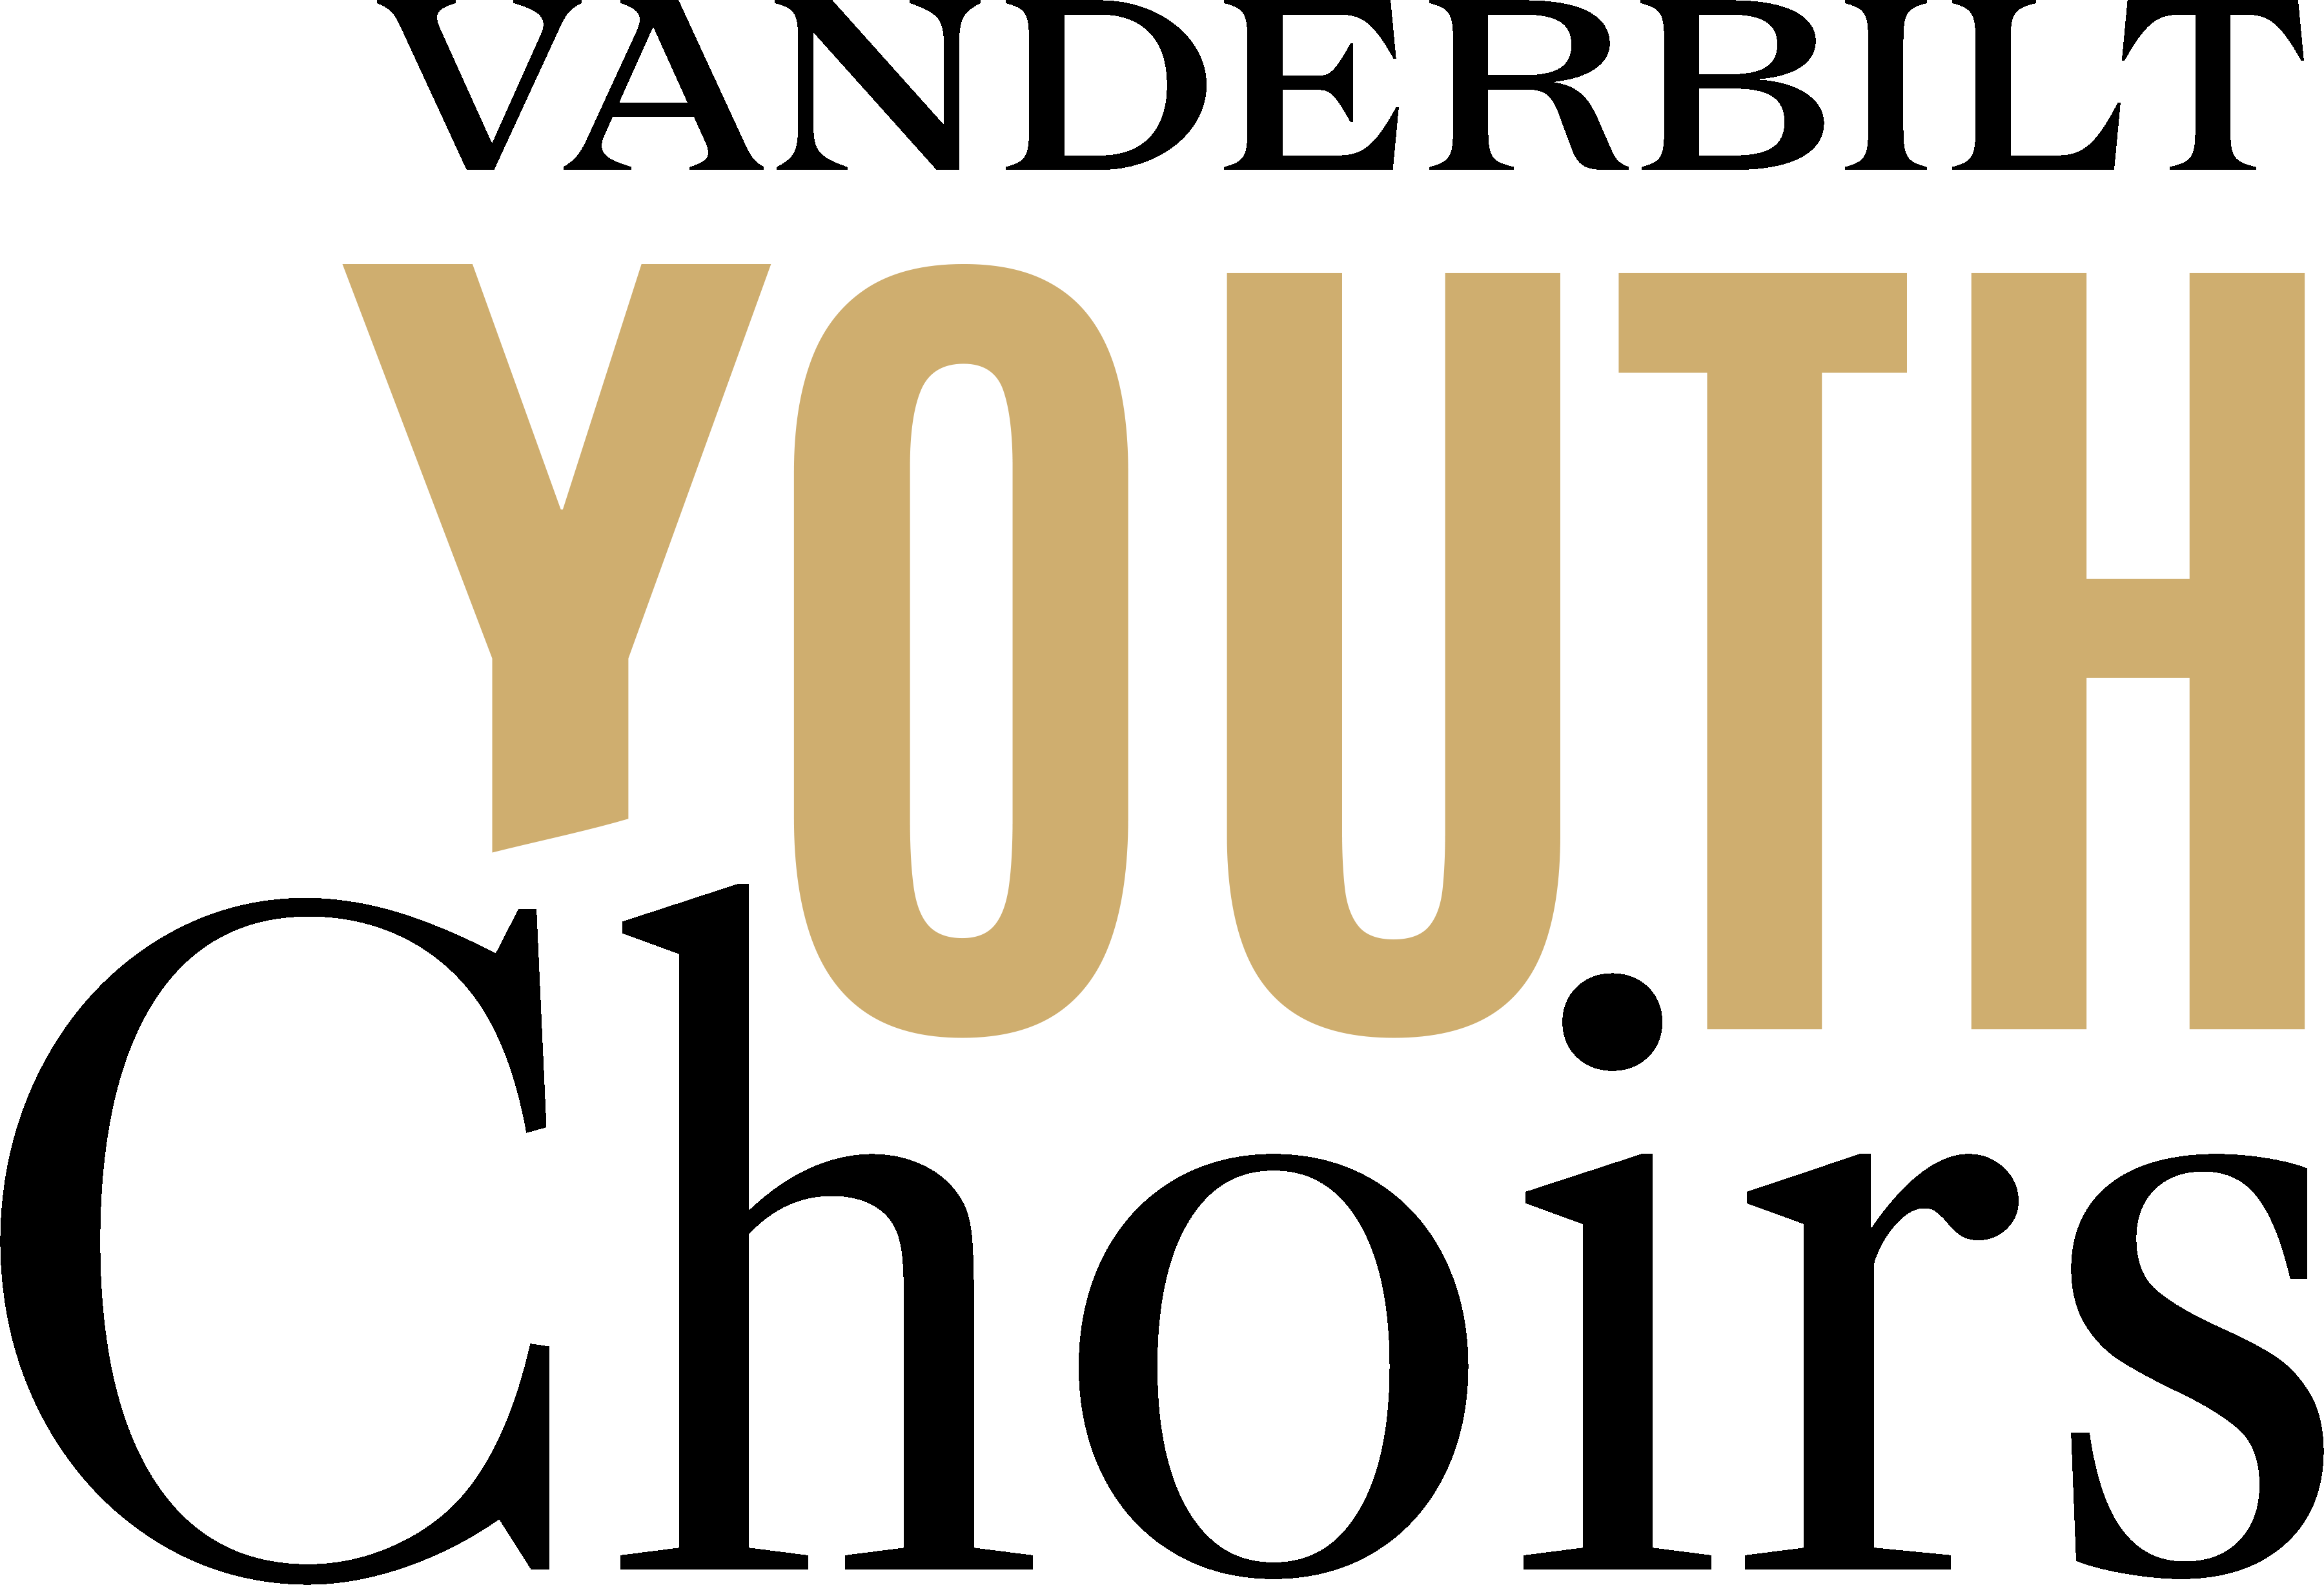 Vanderbilt Youth Choirs